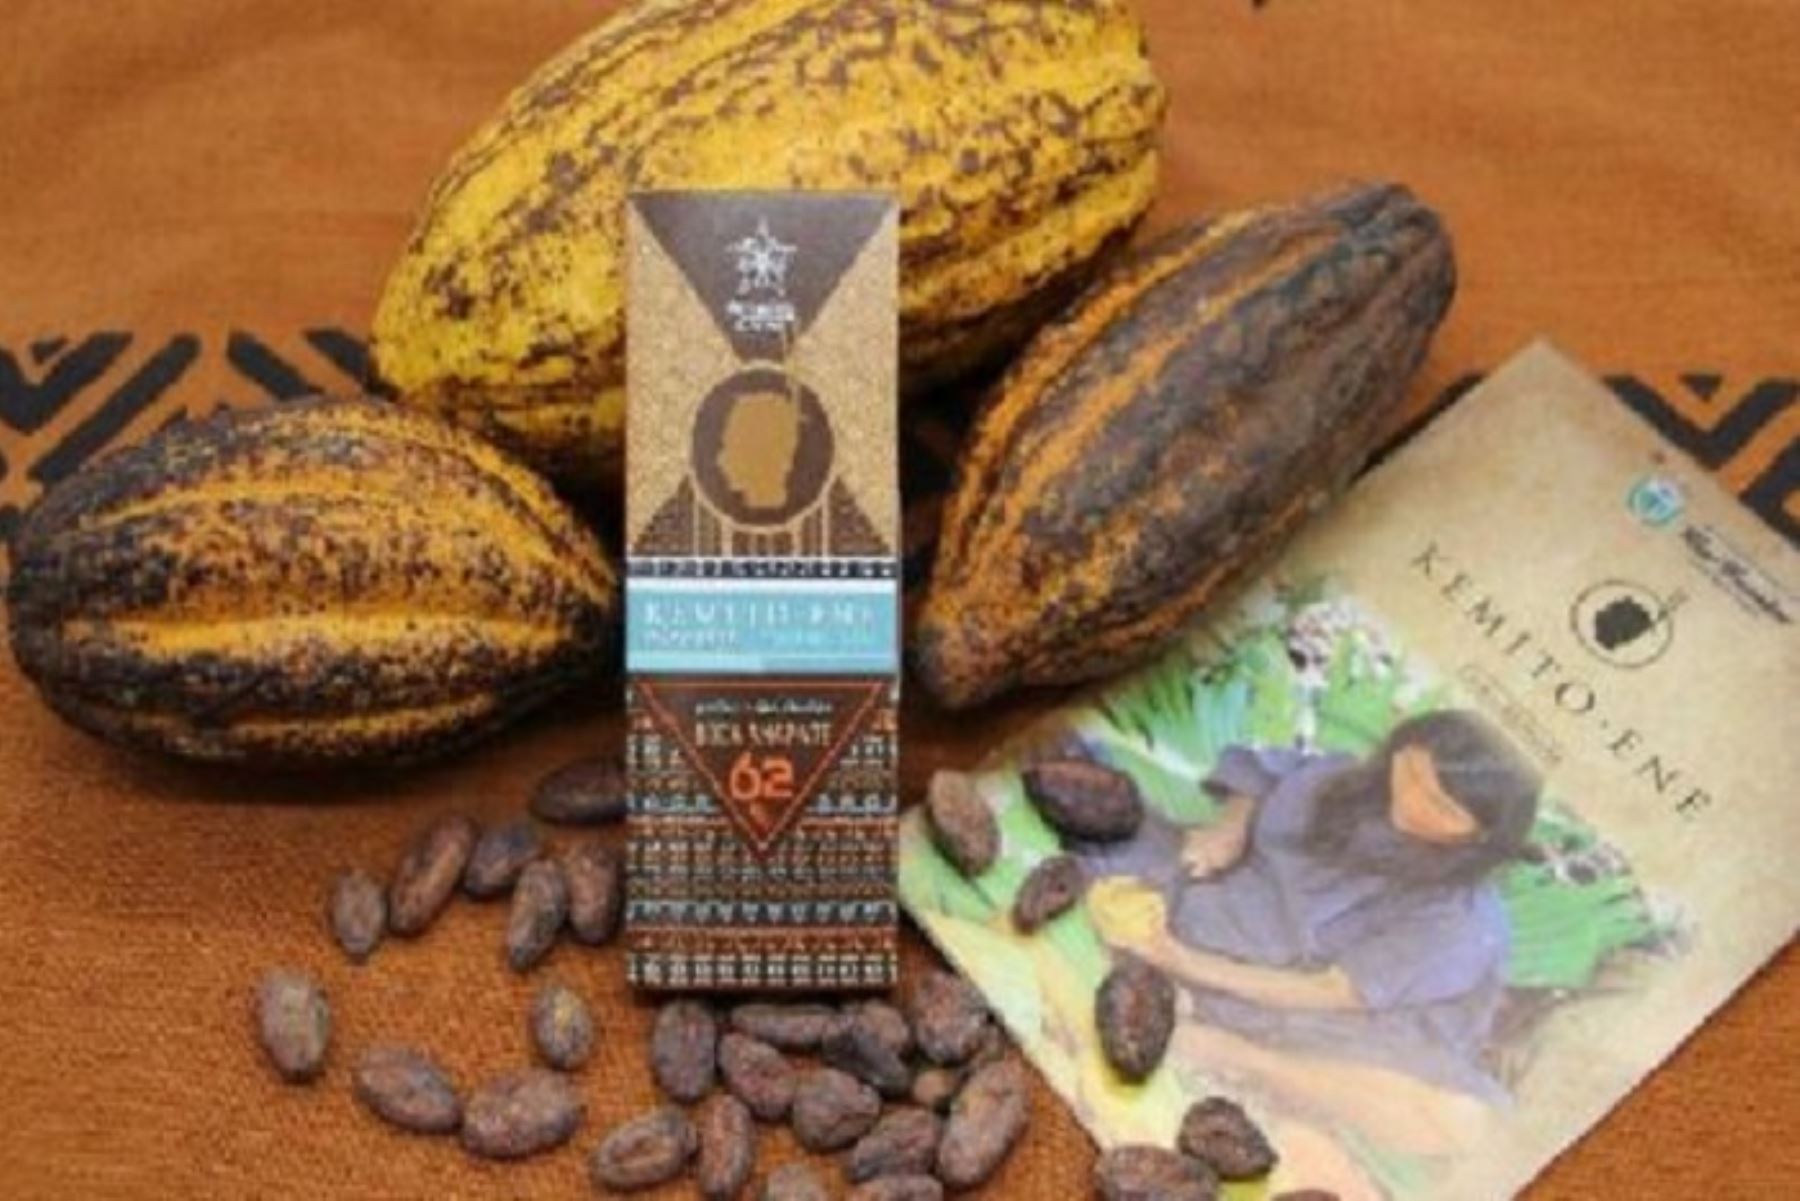 Más de 200 marcas de productos que tienen como insumo básico al cacao peruano se exhibirán en el X Salón del Cacao y Chocolate, que se inaugura este jueves 11 de julio en el Centro de Exposiciones Jockey, en el distrito de Surco, teniendo como país invitado a Estados Unidos y proyectándose superar los 20,000 visitantes.